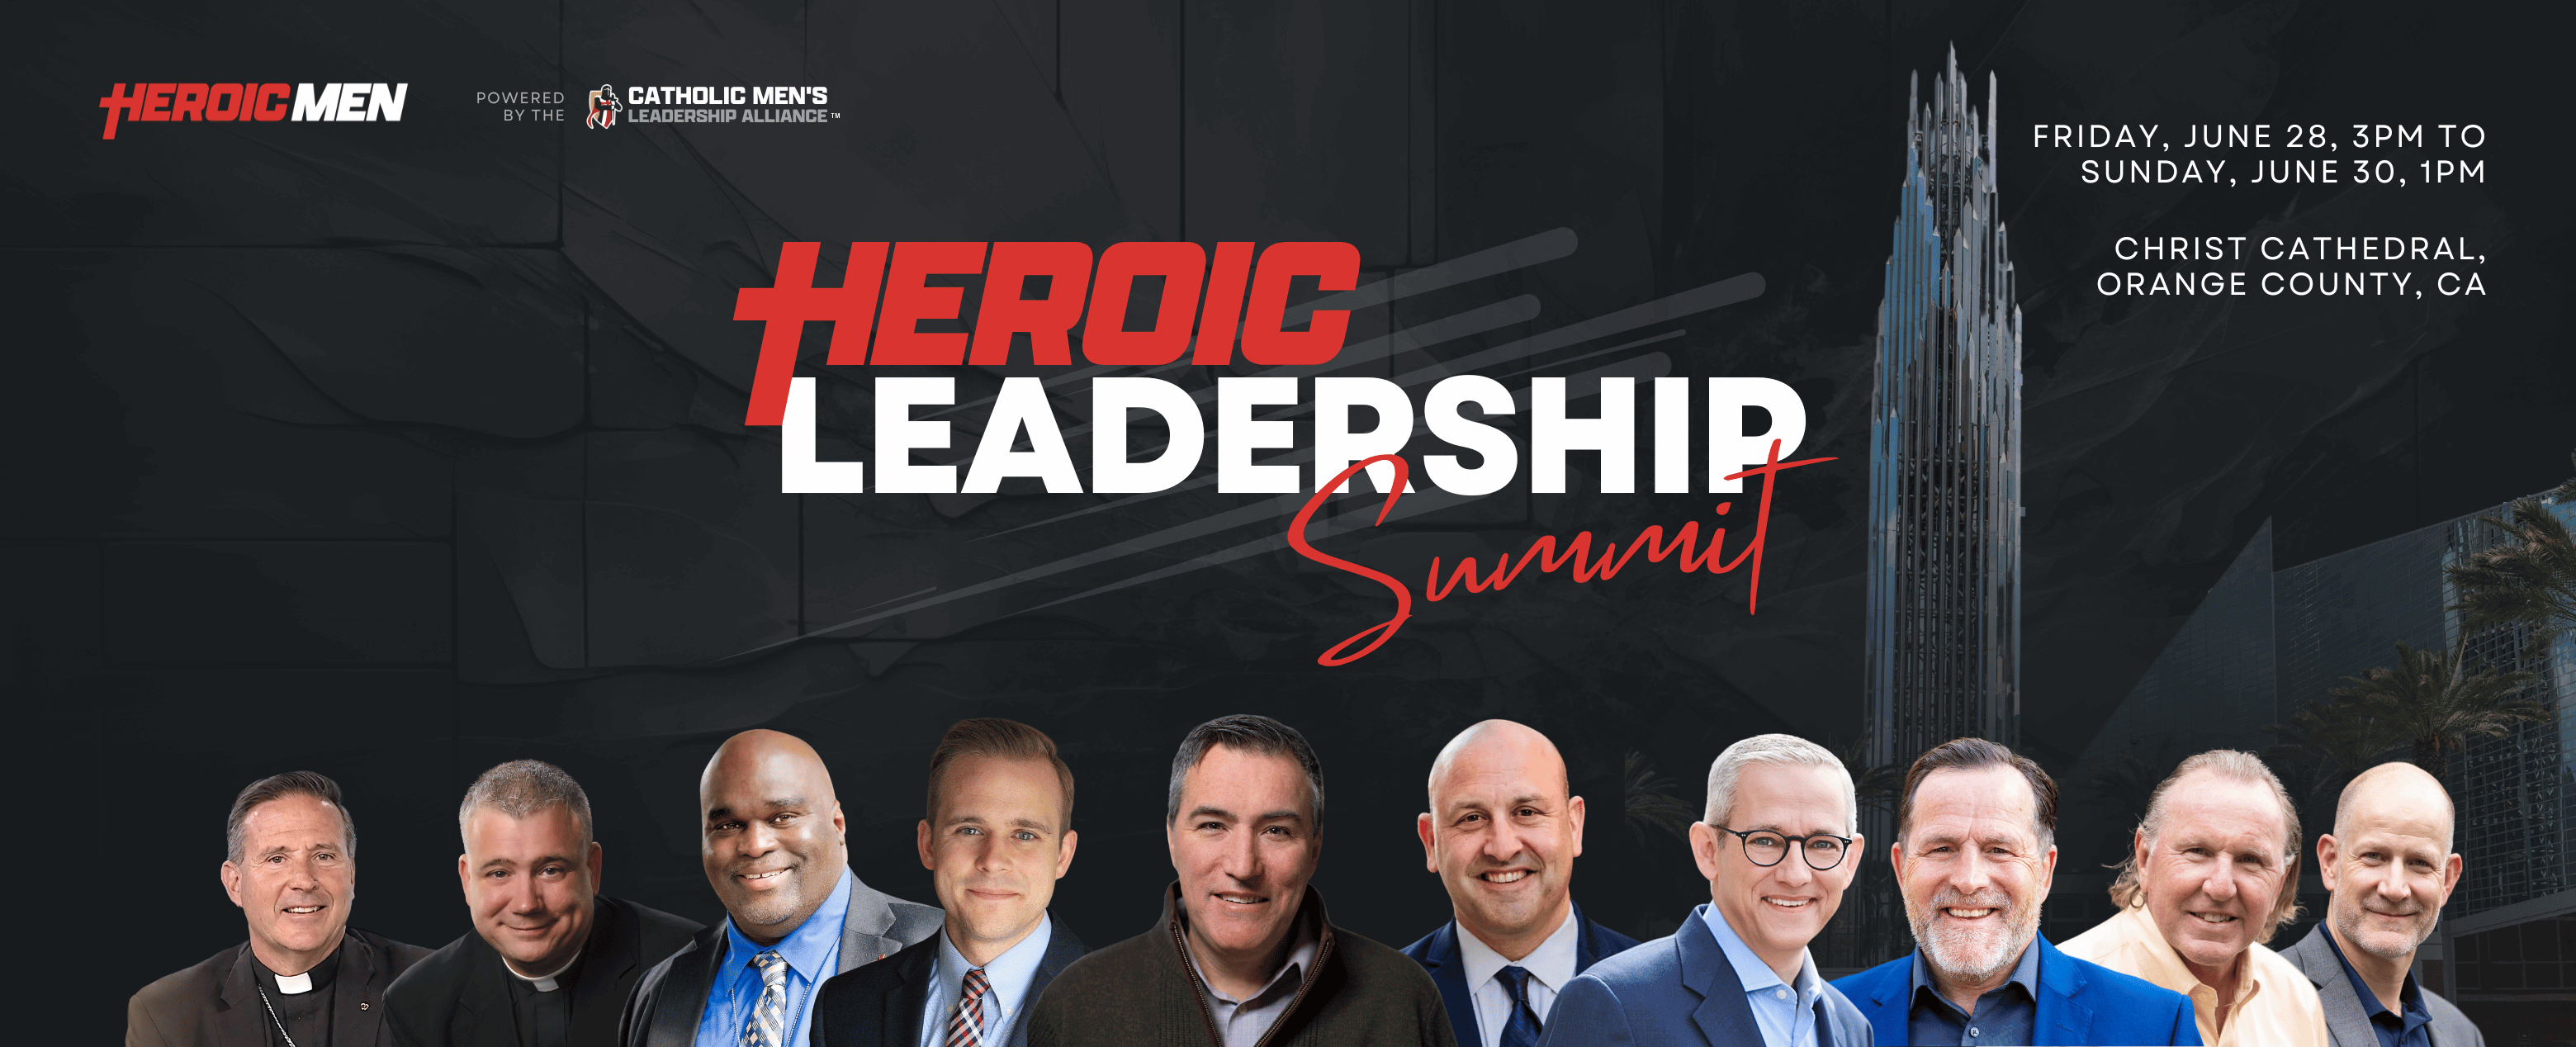 Heroic Leadership Summit  